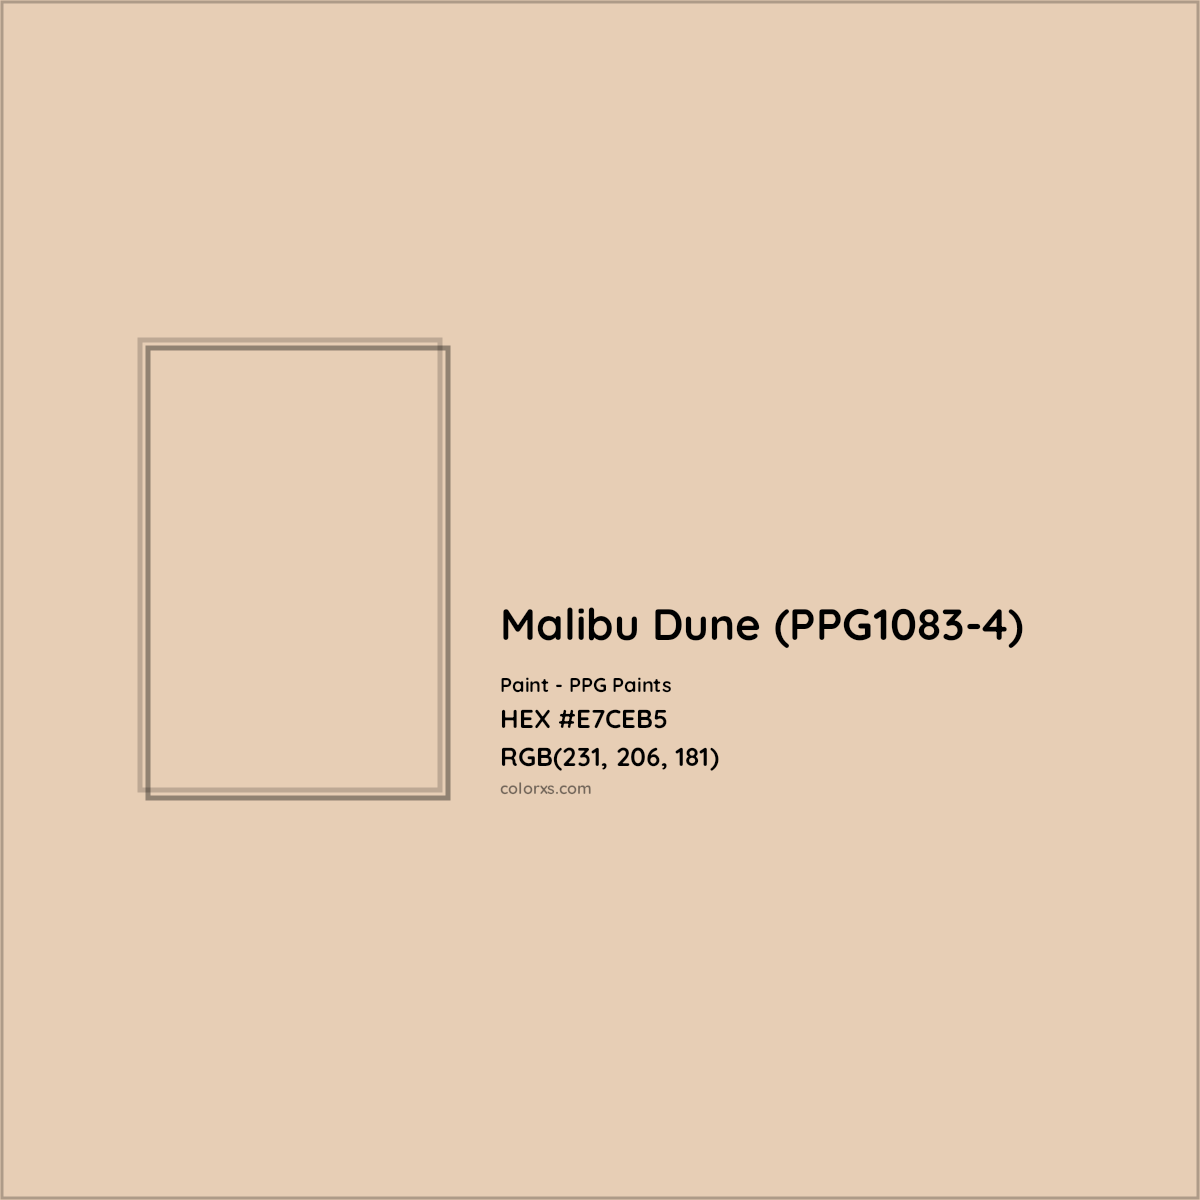 HEX #E7CEB5 Malibu Dune (PPG1083-4) Paint PPG Paints - Color Code